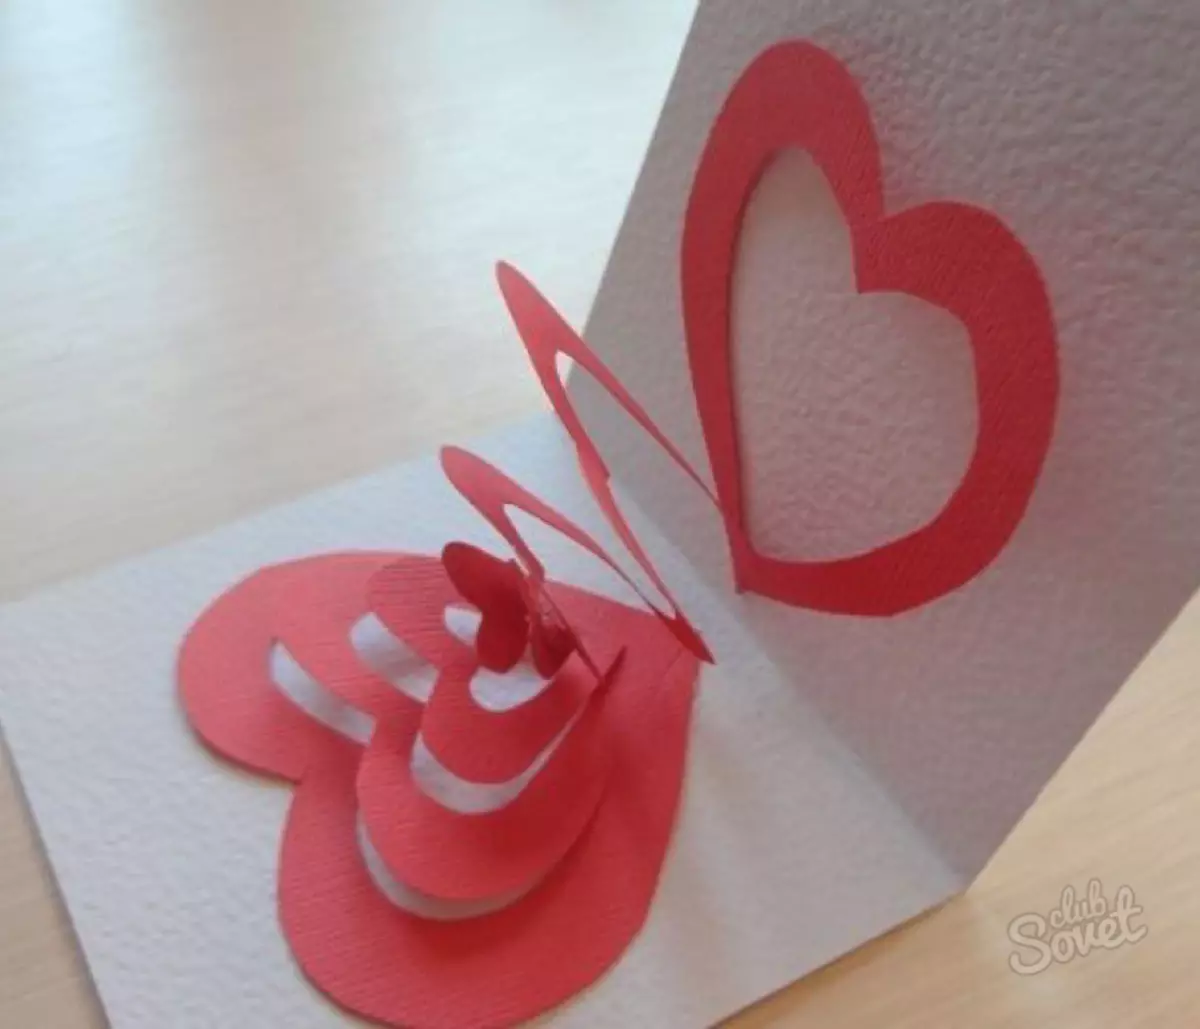 کاغذ سے پوسٹ کارڈ آپ کے اپنے ہاتھوں سے: چھتری کے ساتھ سالگرہ کا کارڈ کیسے بنانا ہے؟ نالے ہوئے کاغذ، ایک دل اور دوسروں کے ساتھ کارڈ 26462_44